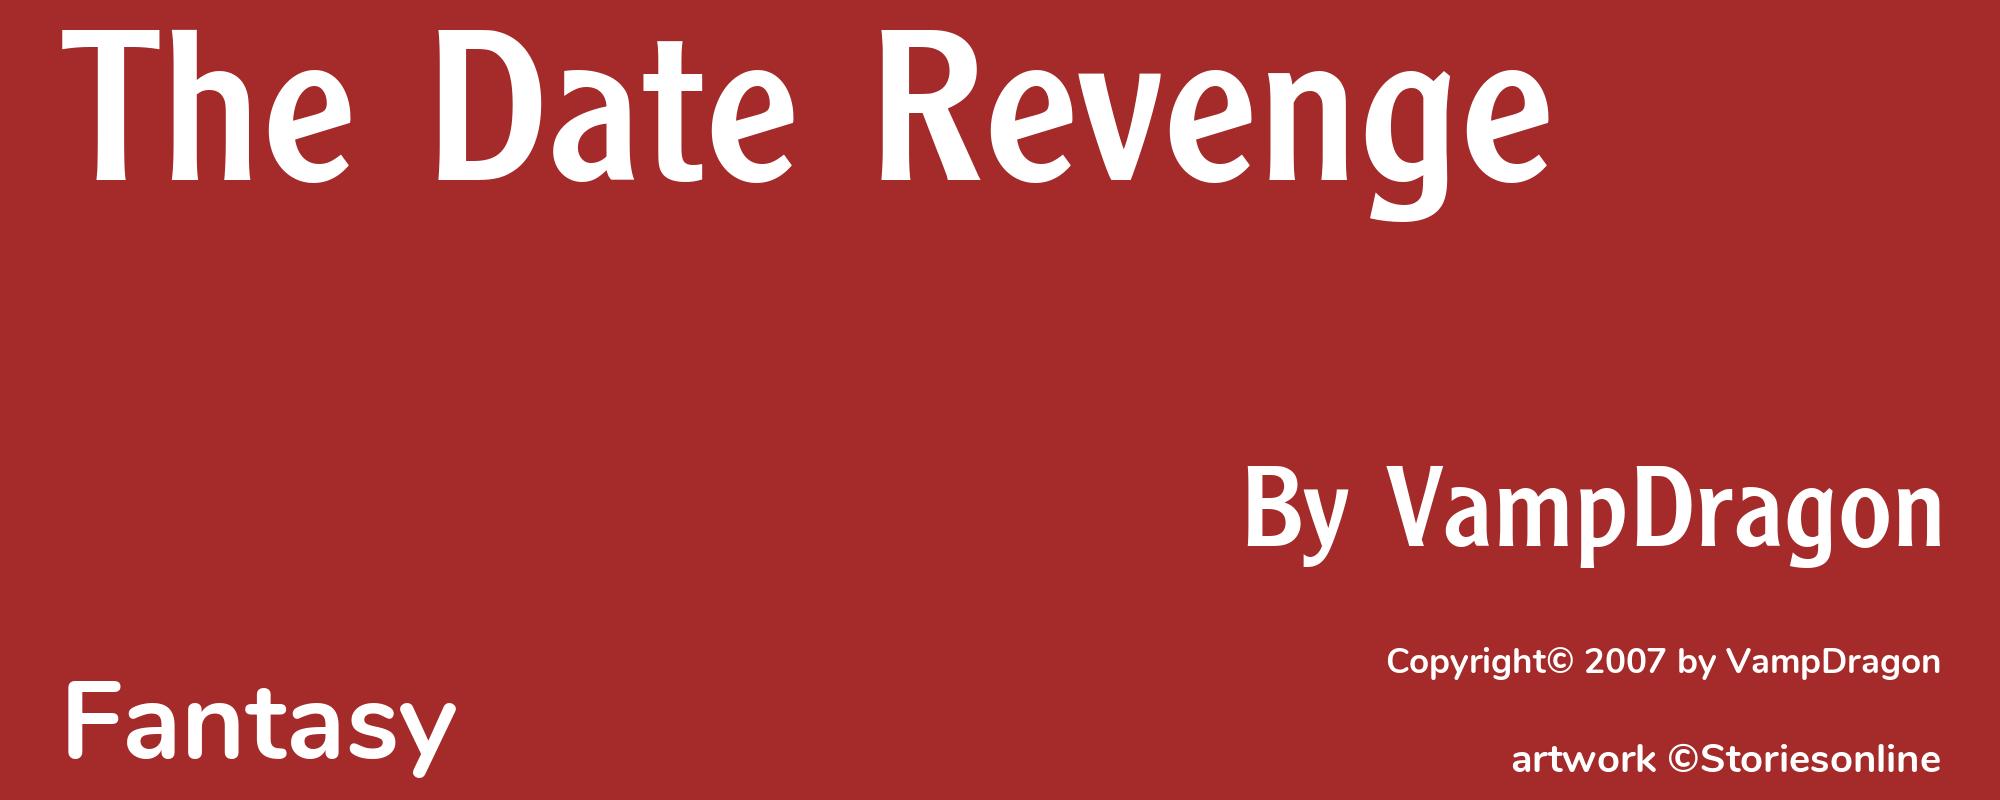 The Date Revenge - Cover